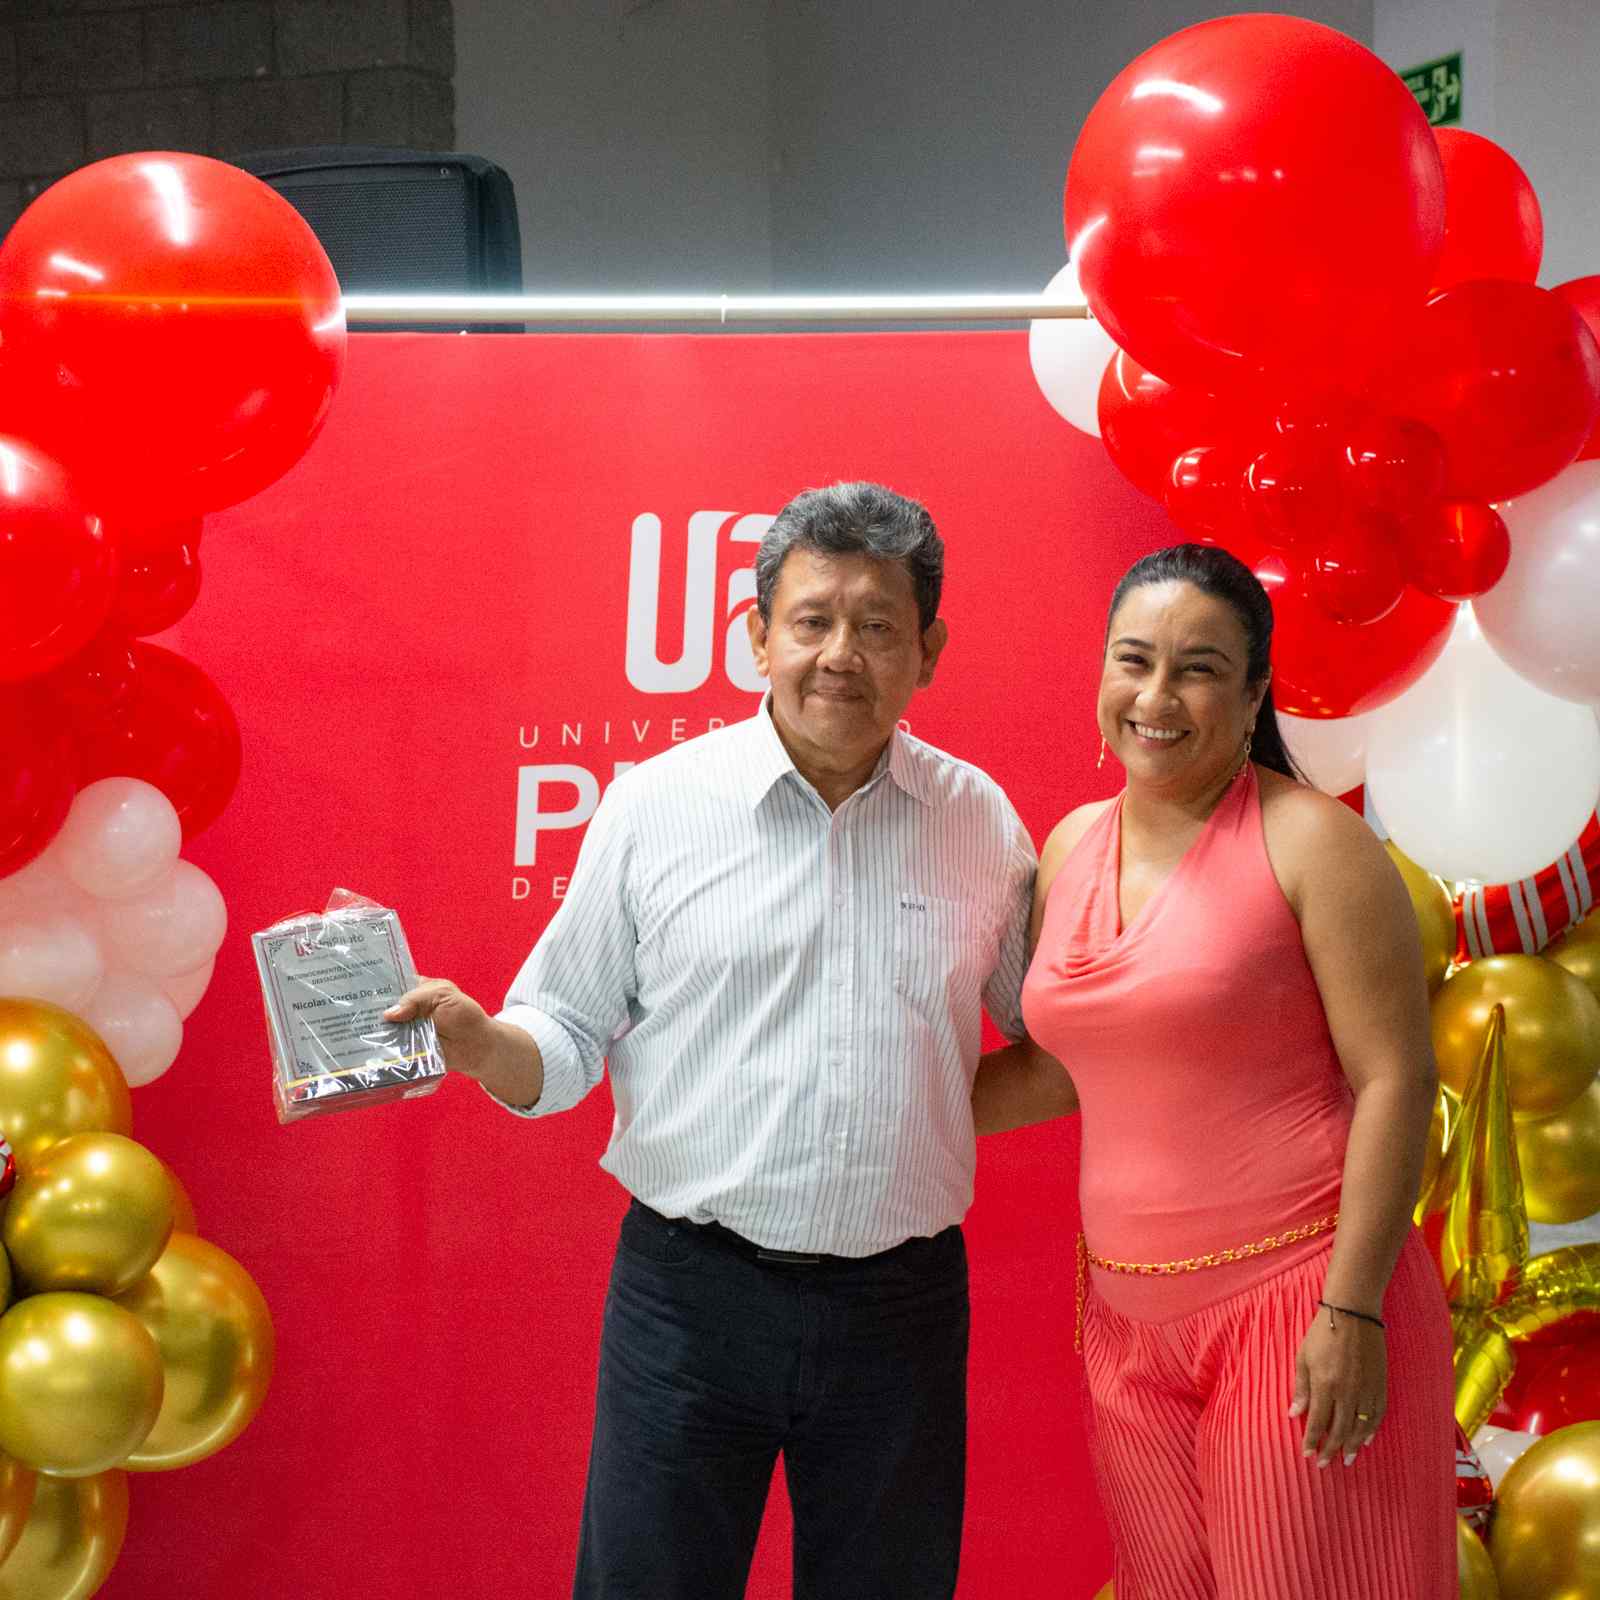 Una foto que muestra a Nicolás García Doncel (izquierda) y a Nataly Beltrán Barco (derecha). Posando sonrientes exhibiendo el reconocimiento que recibió el egresado Nicolás. Ambos están vestidos de gala, frente a un fondo rojo con el logo de la unipiloto.